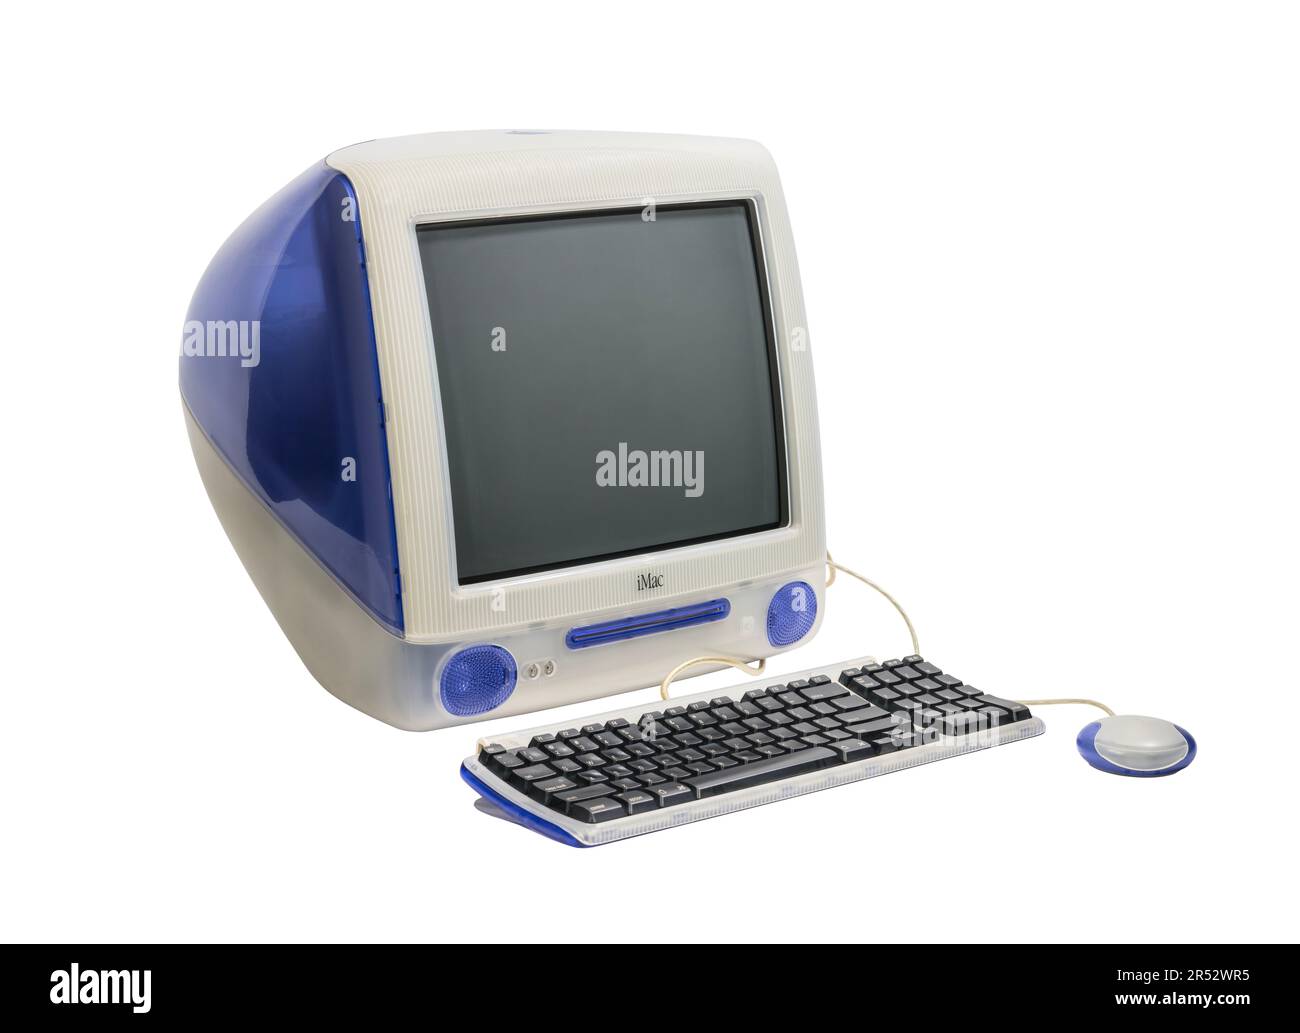 Los Angeles, Kalifornien, USA - 29. Mai 2023: Redaktionelles Foto eines 1999 Jahre alten Apple iMac Desktop-Computers, Tastatur und Maus. Stockfoto